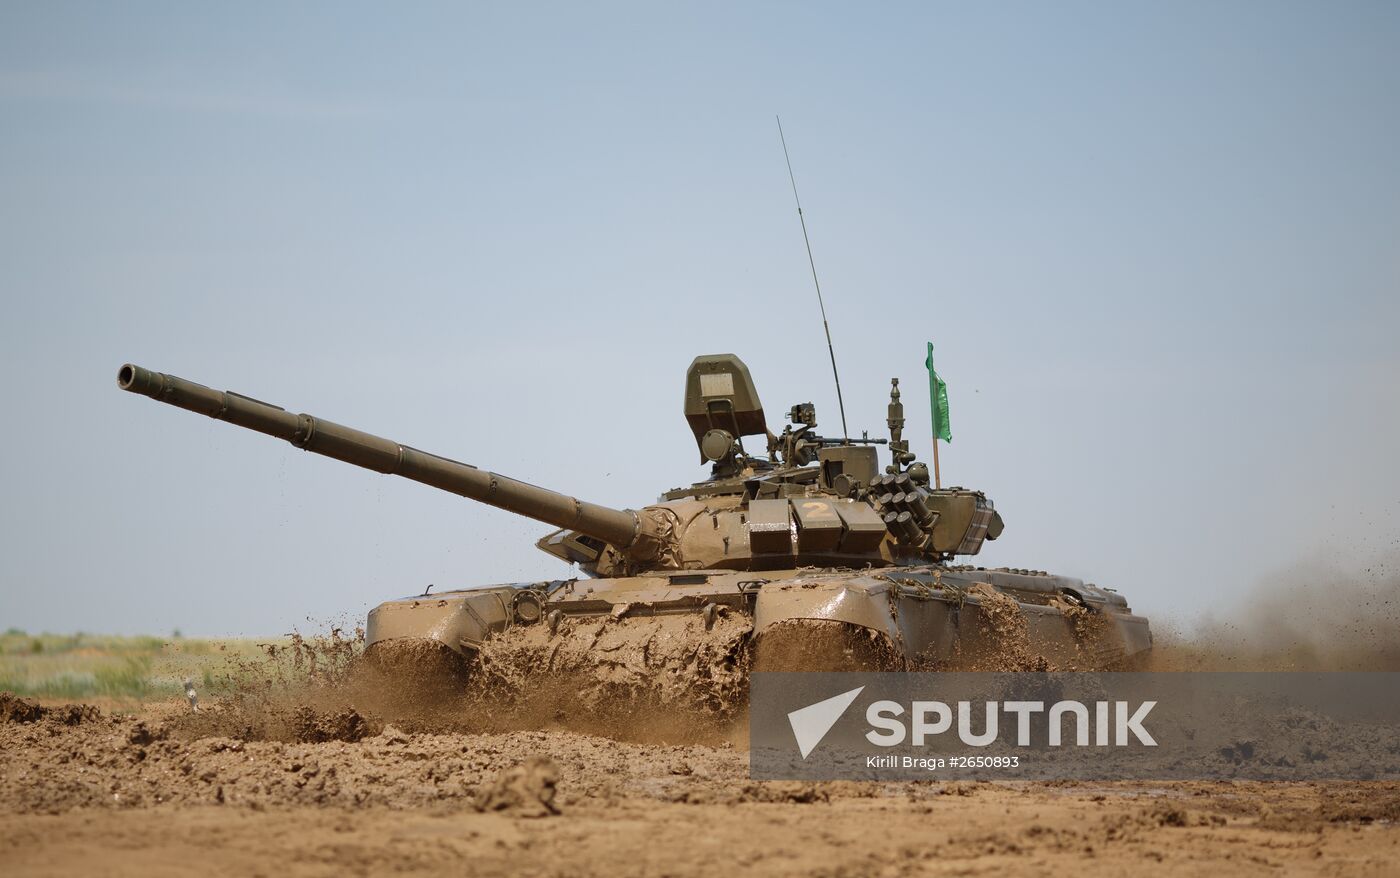 Tank Biathlon 2015 wraps up in Volgograd